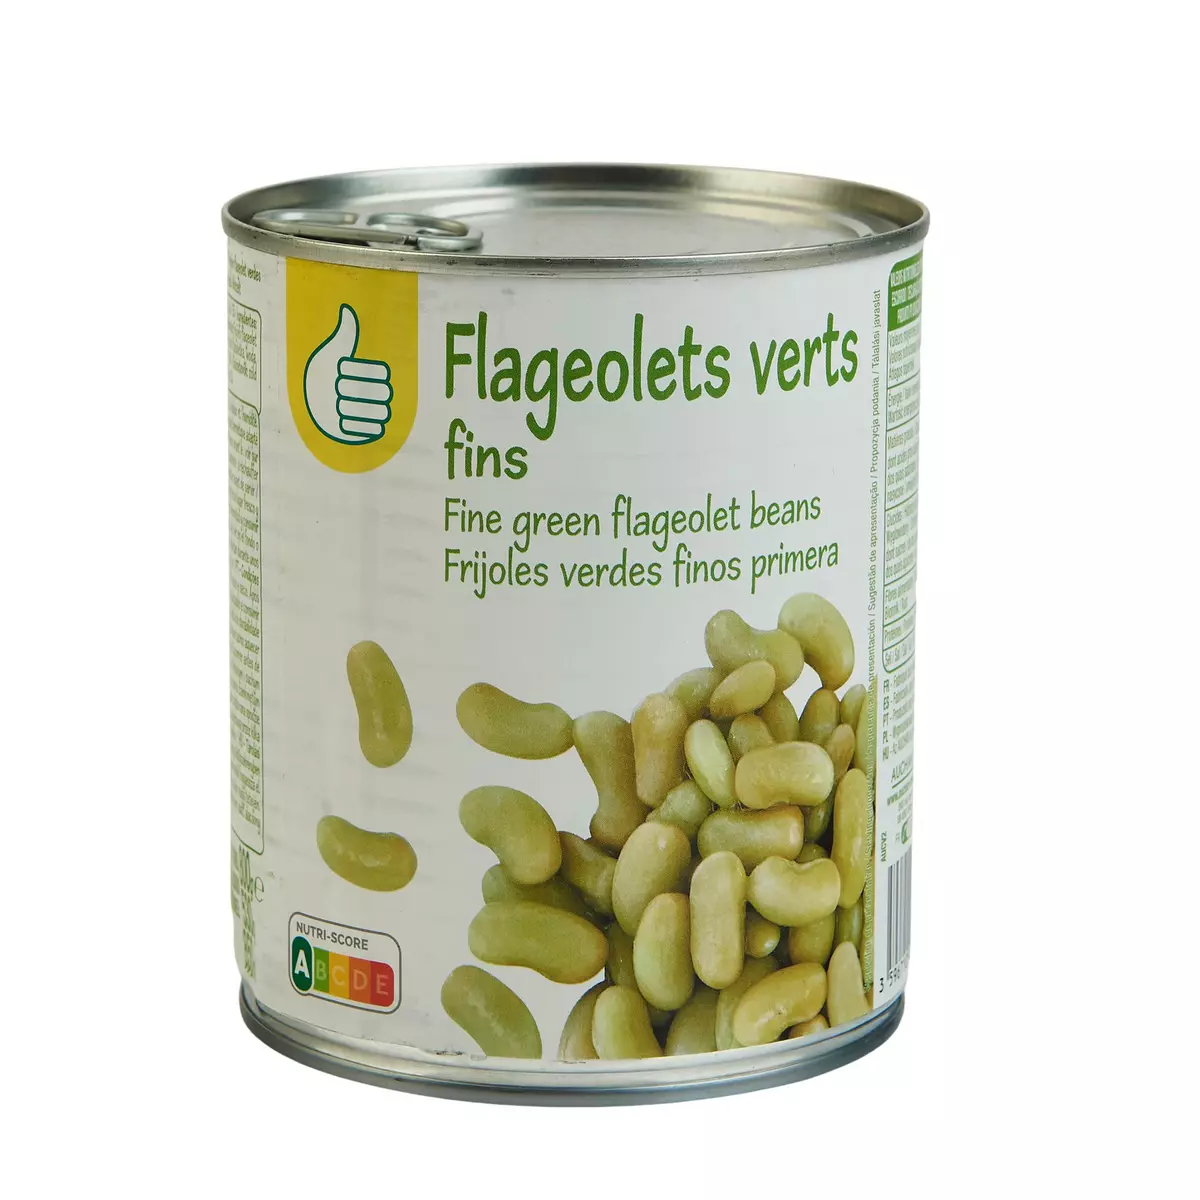 POUCE Flageolets verts fins  530g